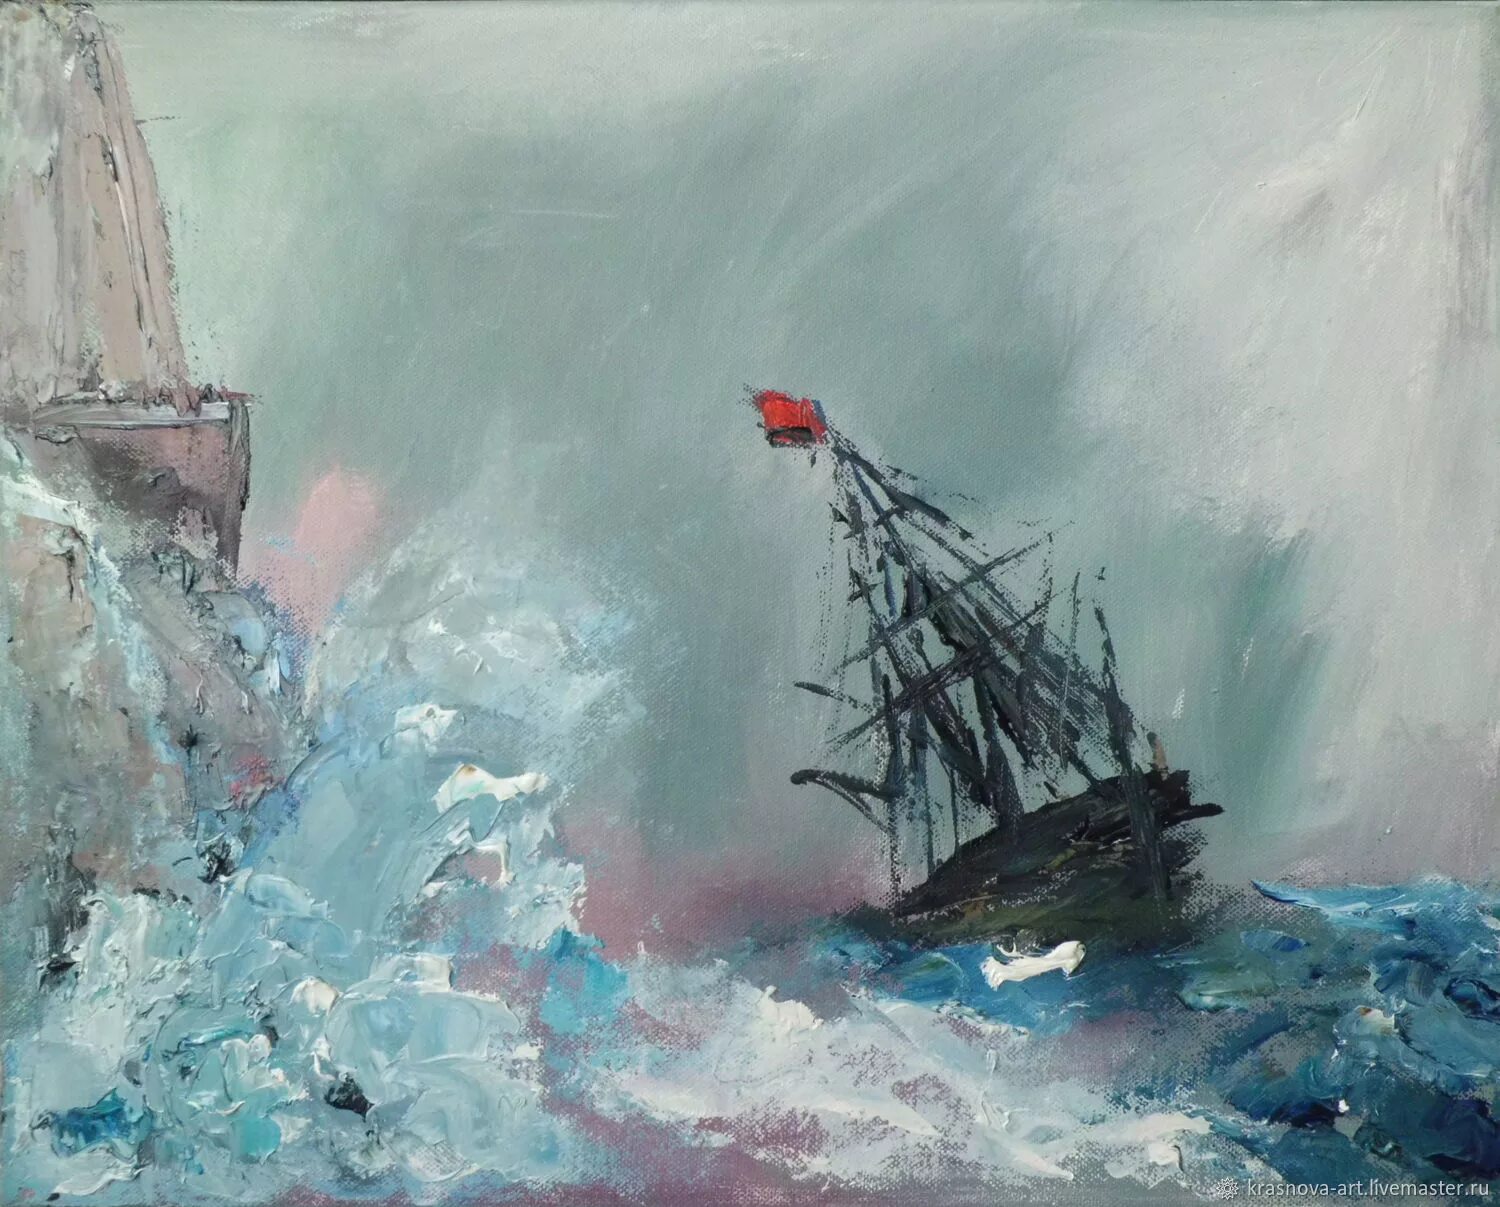 Картина "шторм". Картина шторм на море. Шторм картина маслом. Корабль в бурю Дорогов. Книга даниила туленкова шторм z